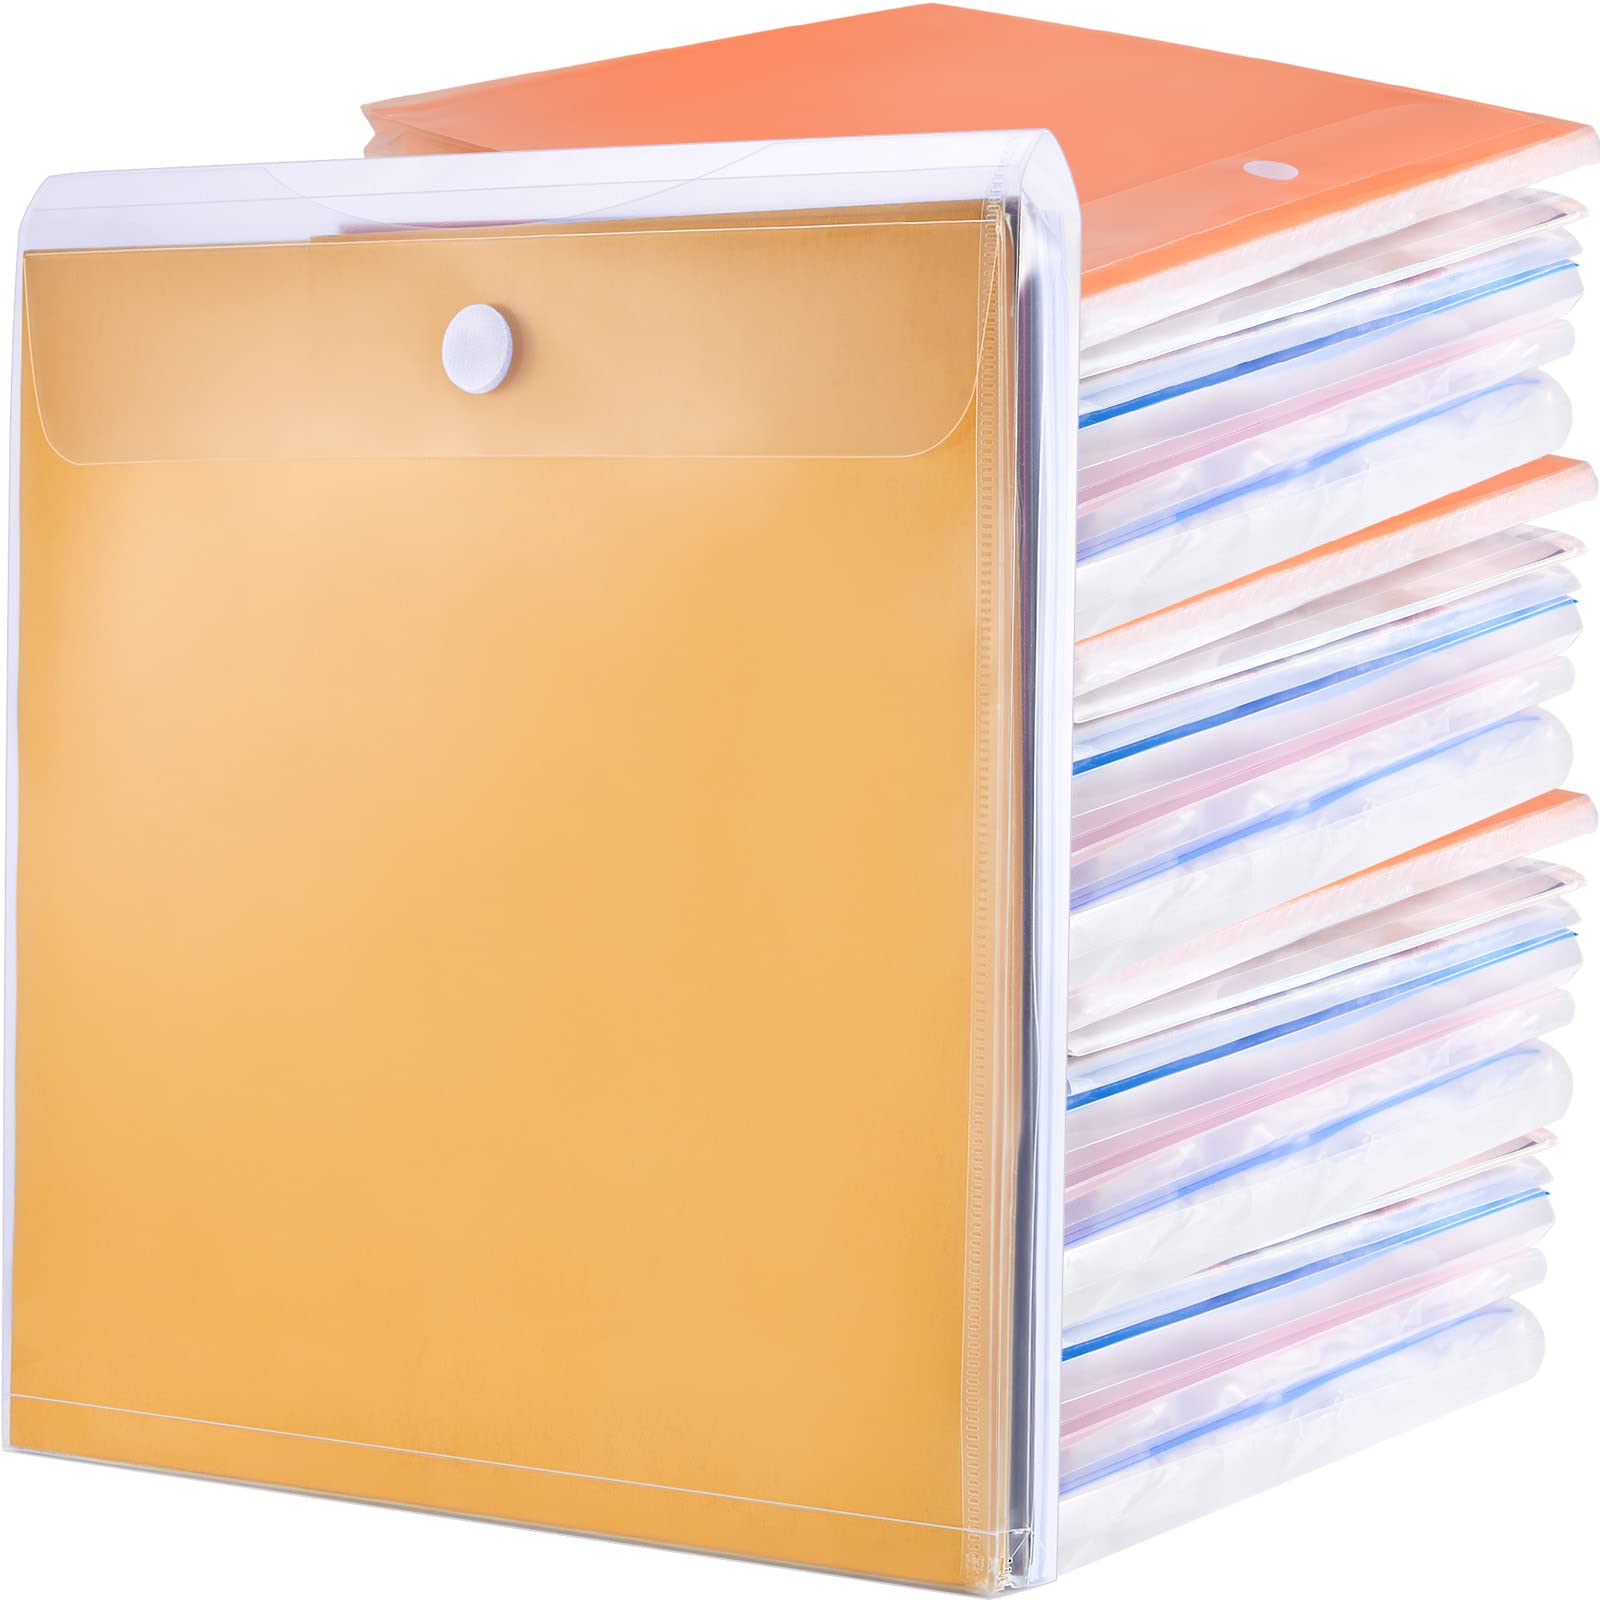  Scrapbook Paper Storage Organizer, 12x12 Paper Storage